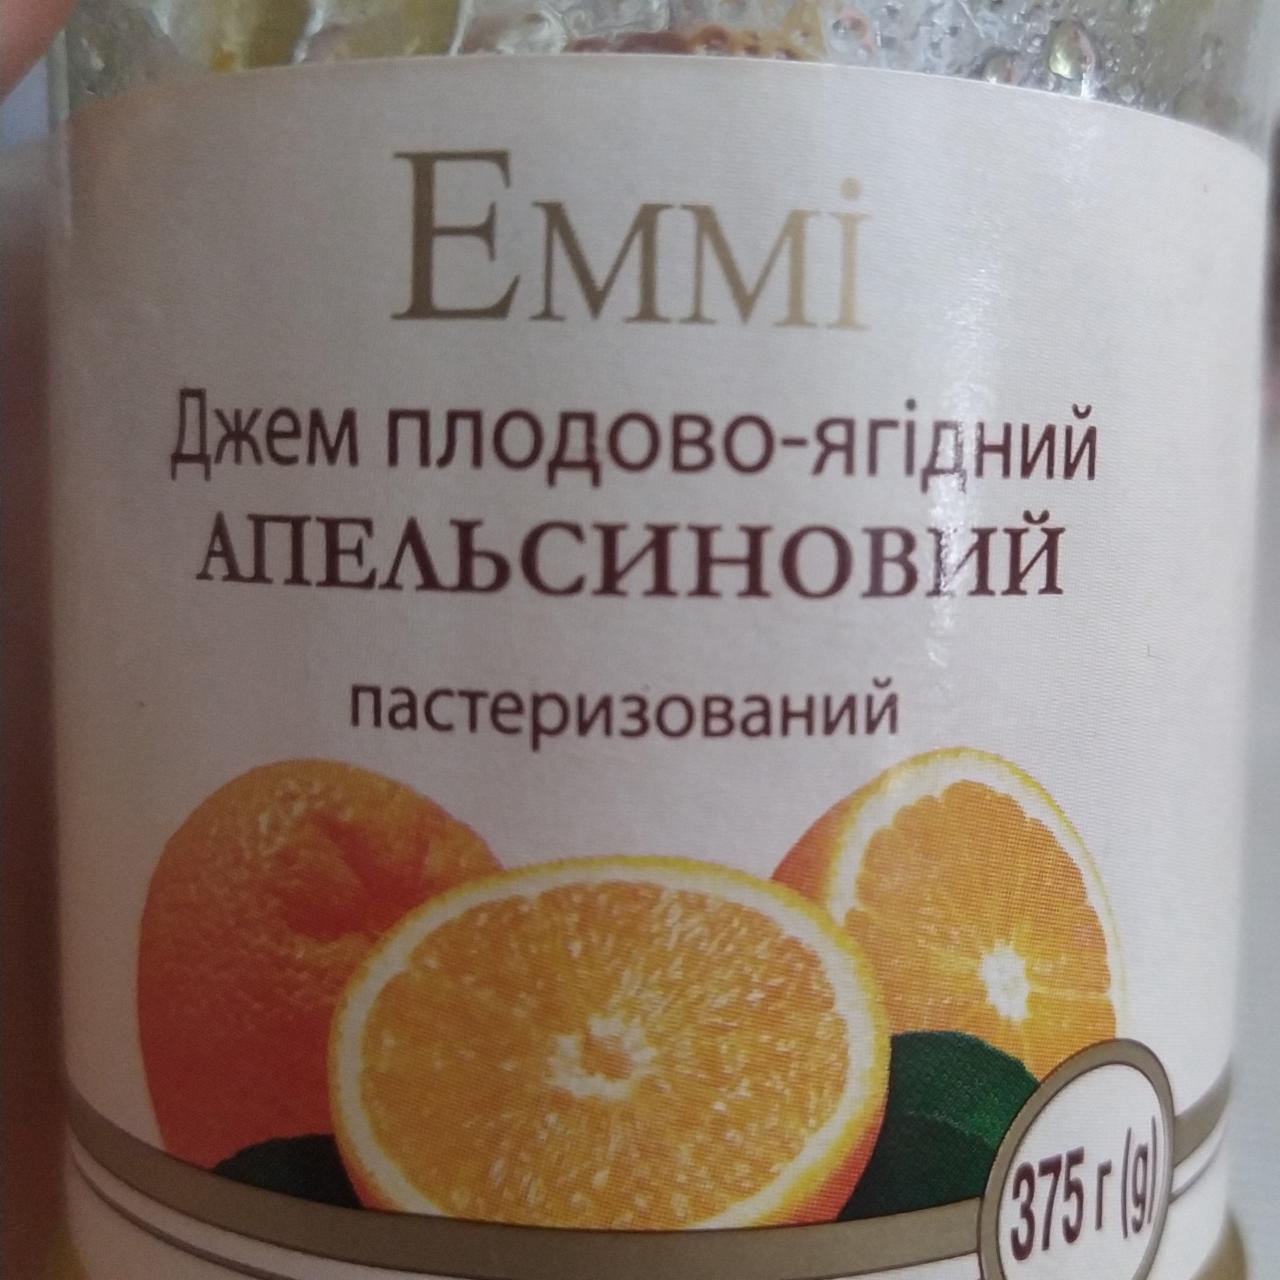 Фото - джем плодово-ягодный апельсиновый Еммі